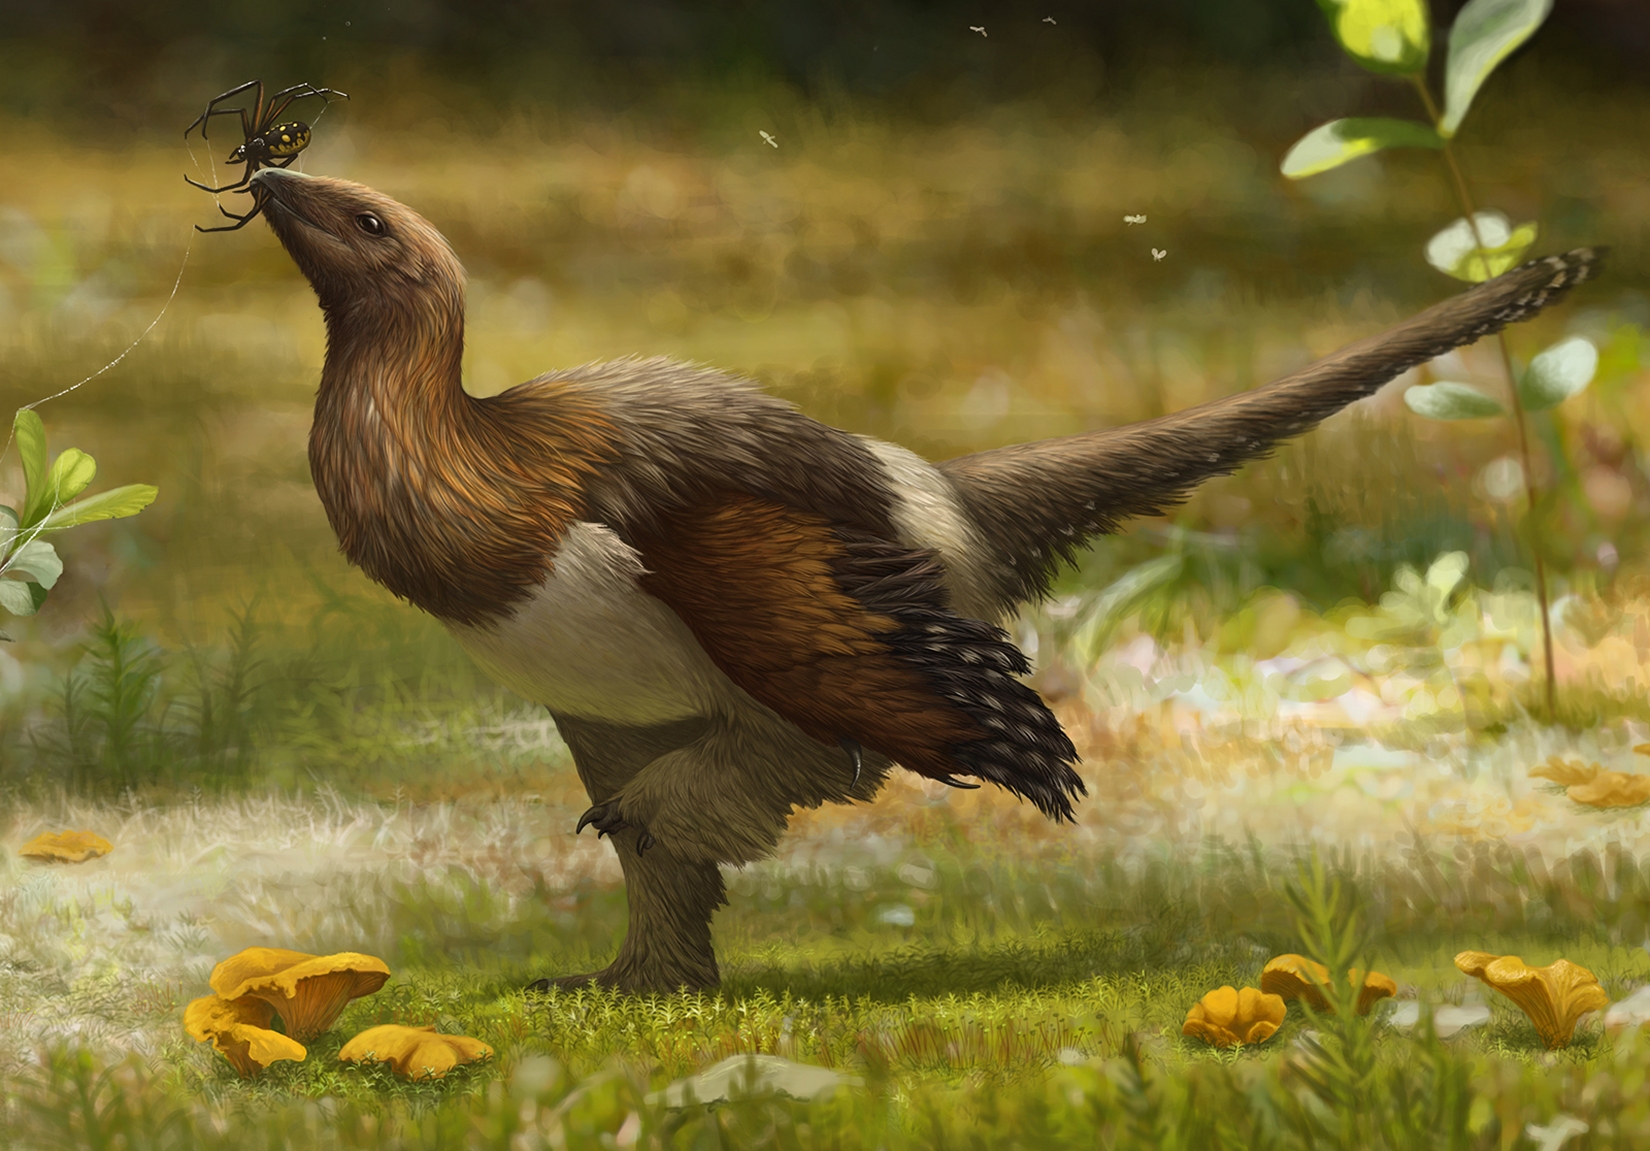 Une représentation de Serikornis sungei, alias Silky, un dinosaure joliment plumé du Jurassique. © Emily Willougby, CC by-sa 4.0